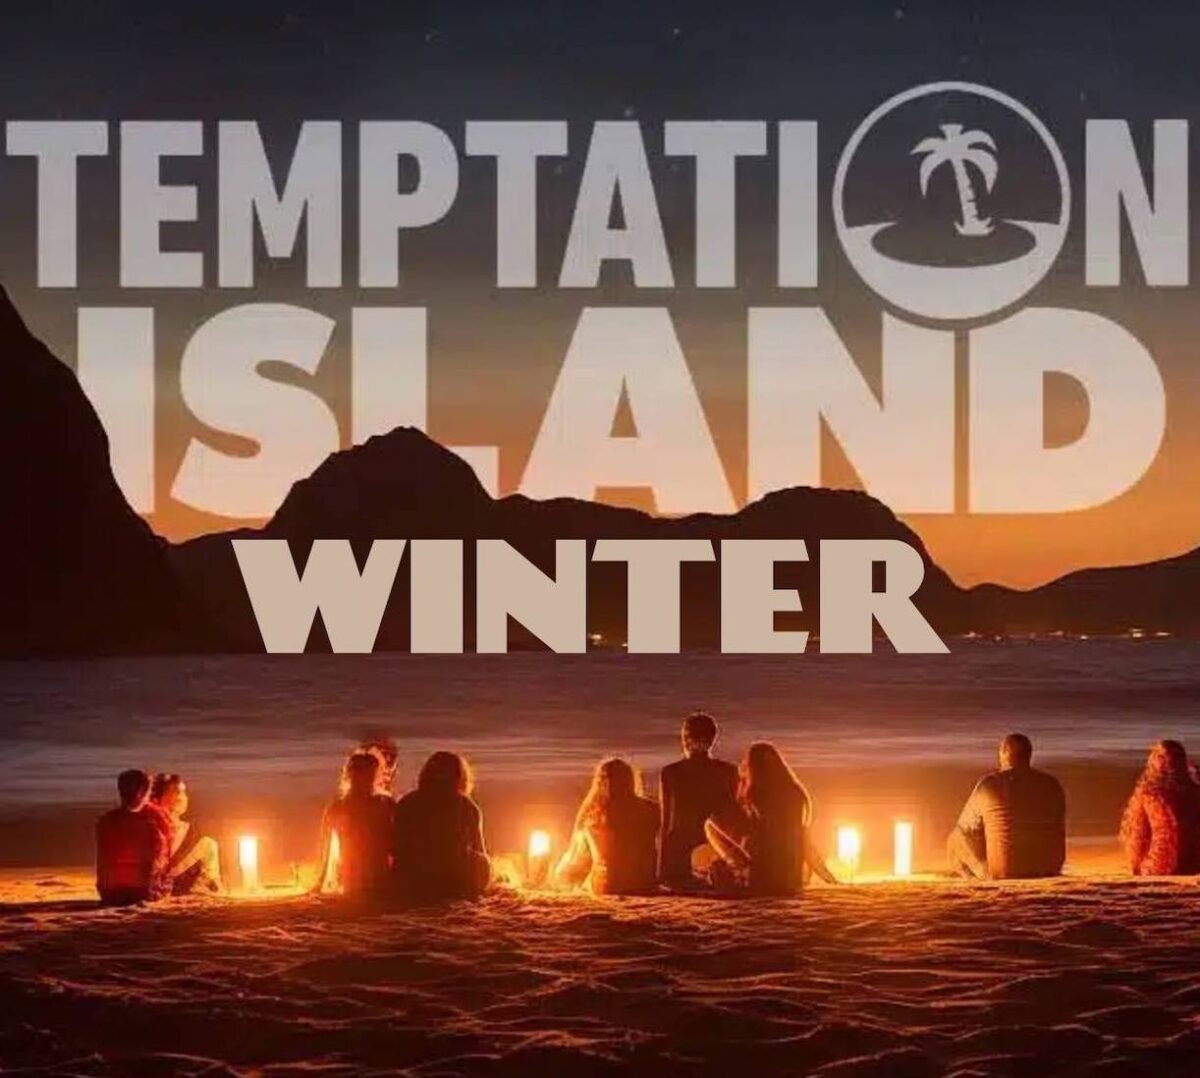 Tutto pronto per Temptation Island Winter